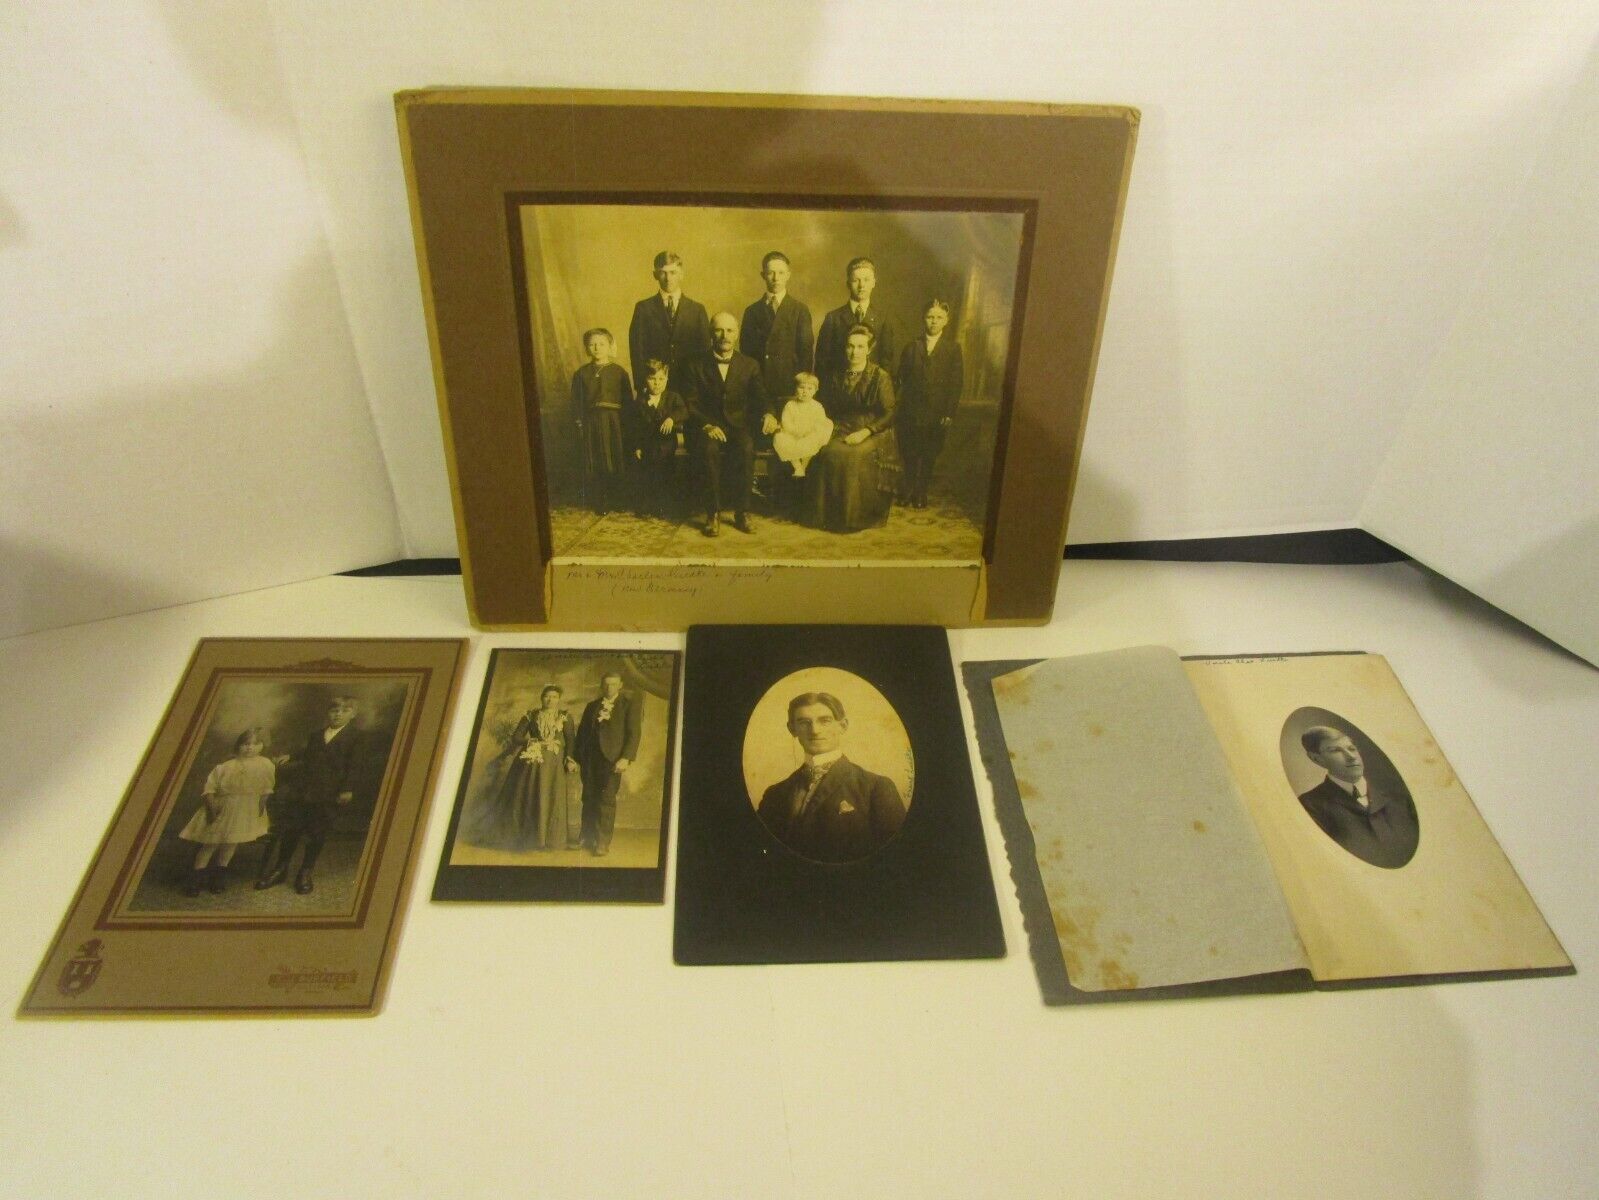 leudtke family   Antique Family Photograph Portraits 1900- 1930   Photos  p245